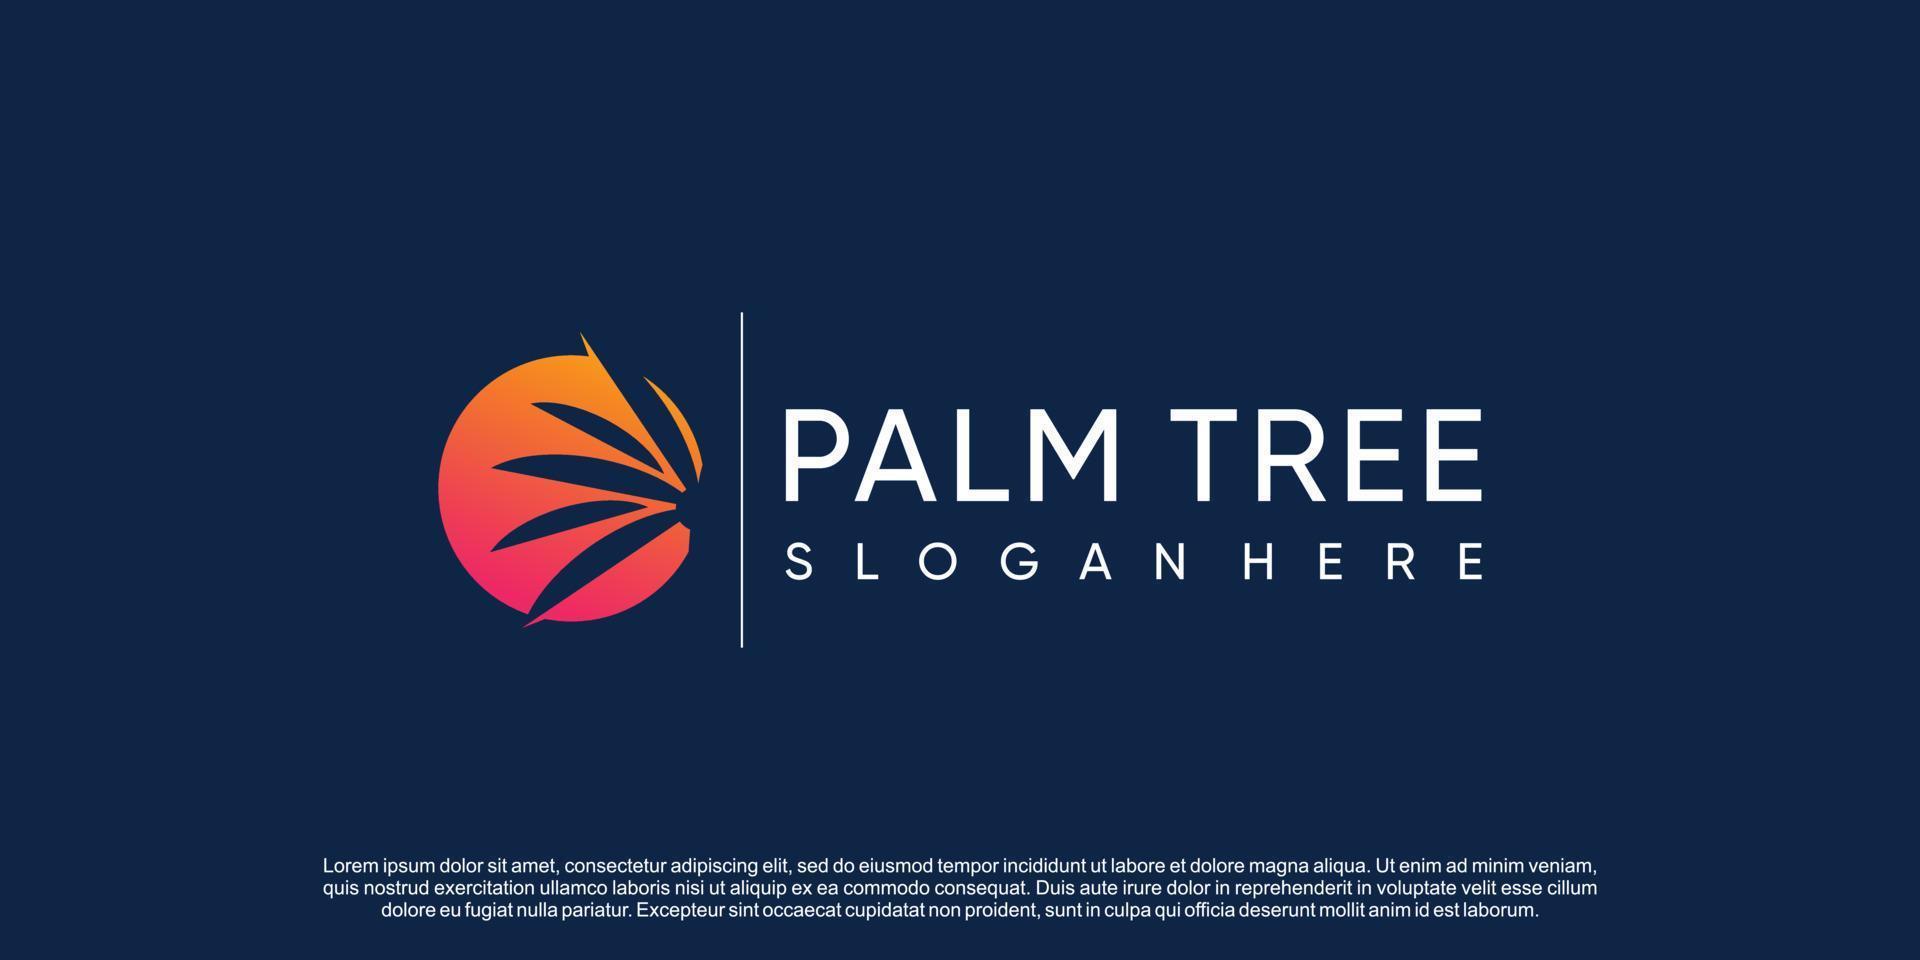 vetor de design de logotipo de palma com conceito criativo simples e único